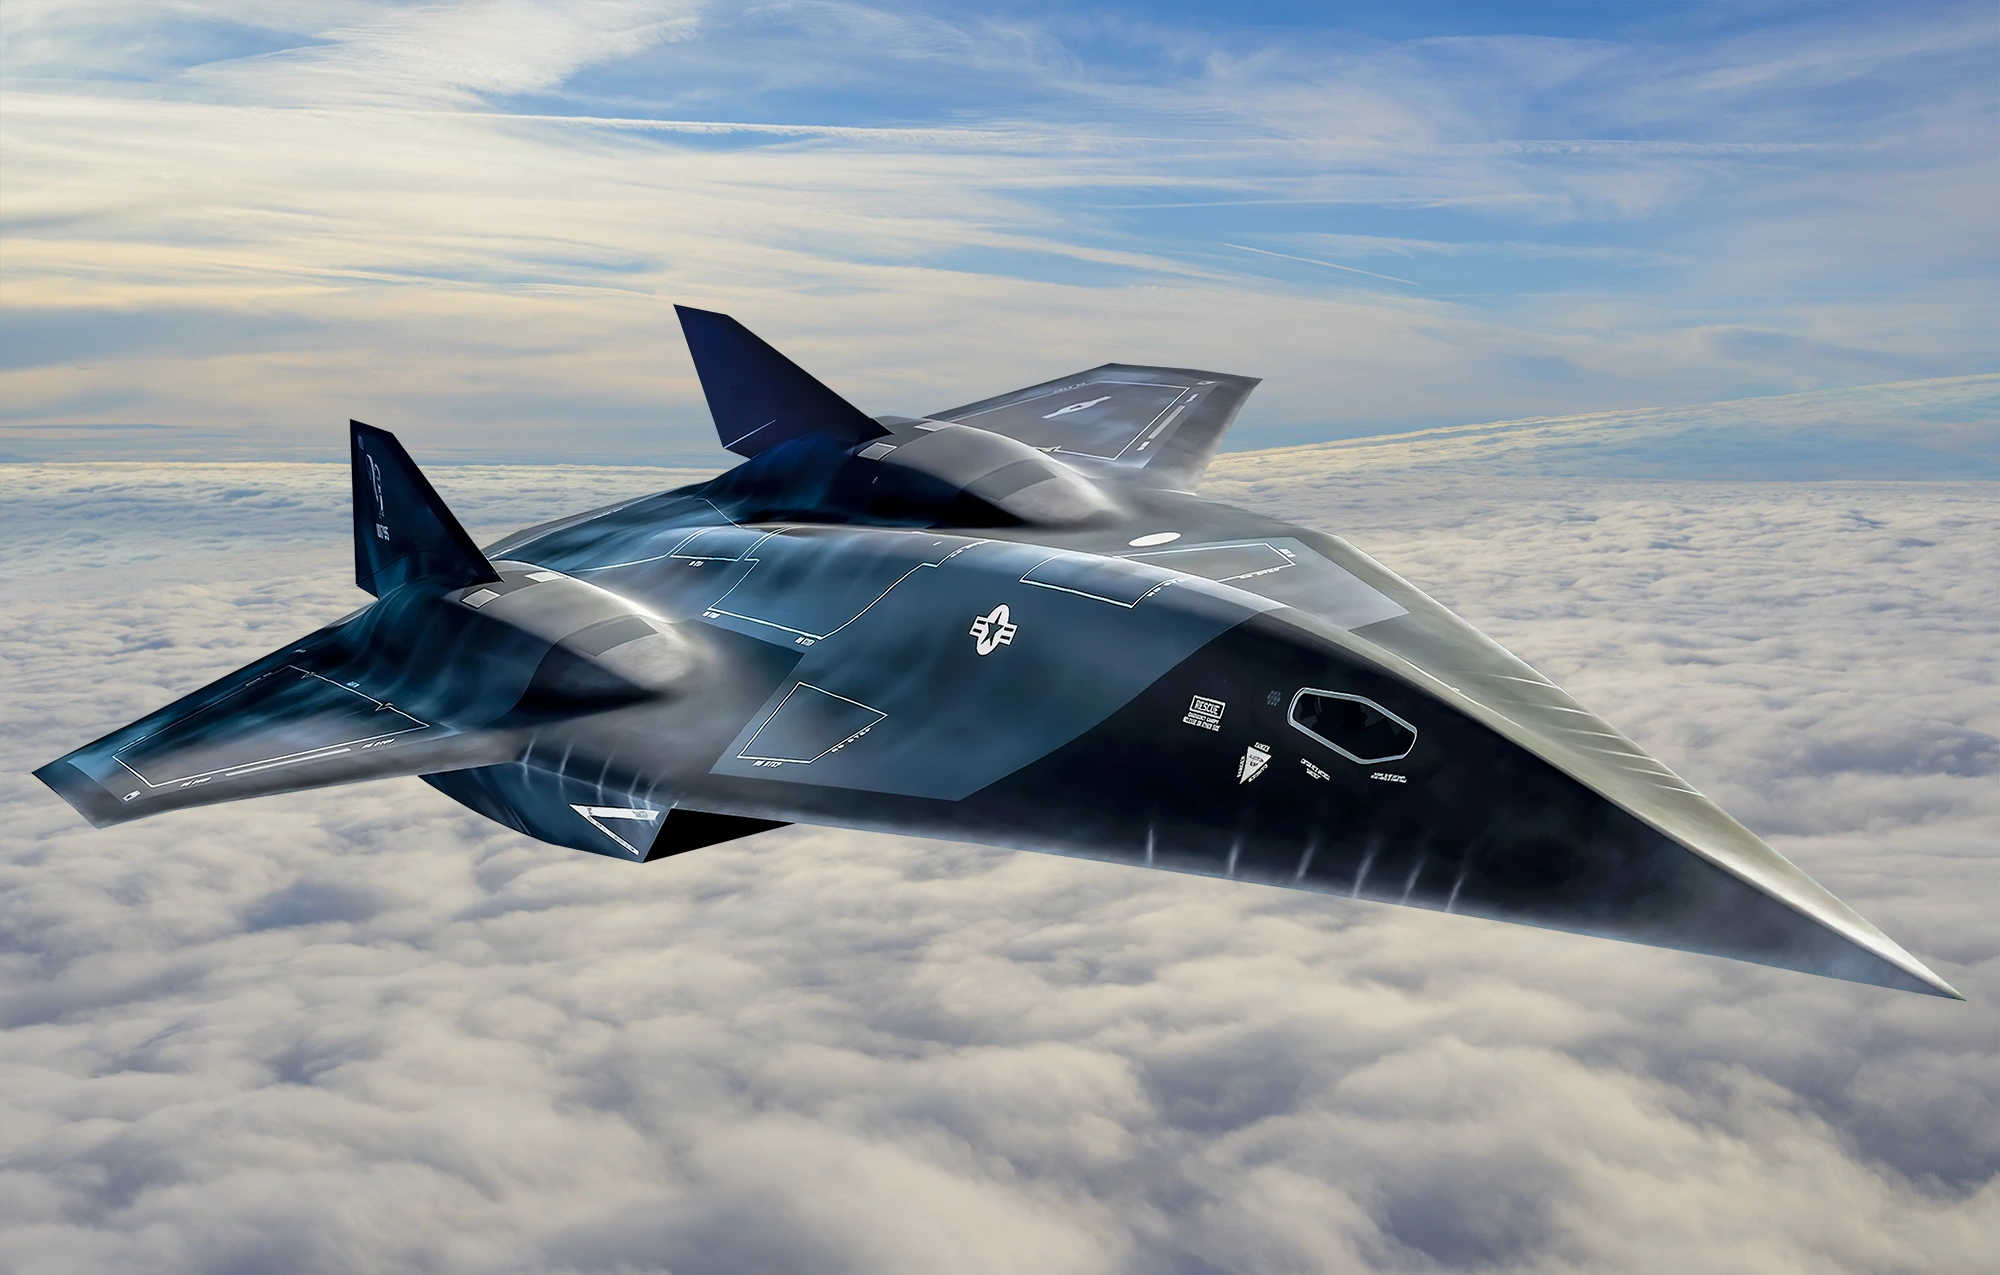 El plan secreto de la USAF para desarrollar un bombardero hipersónico